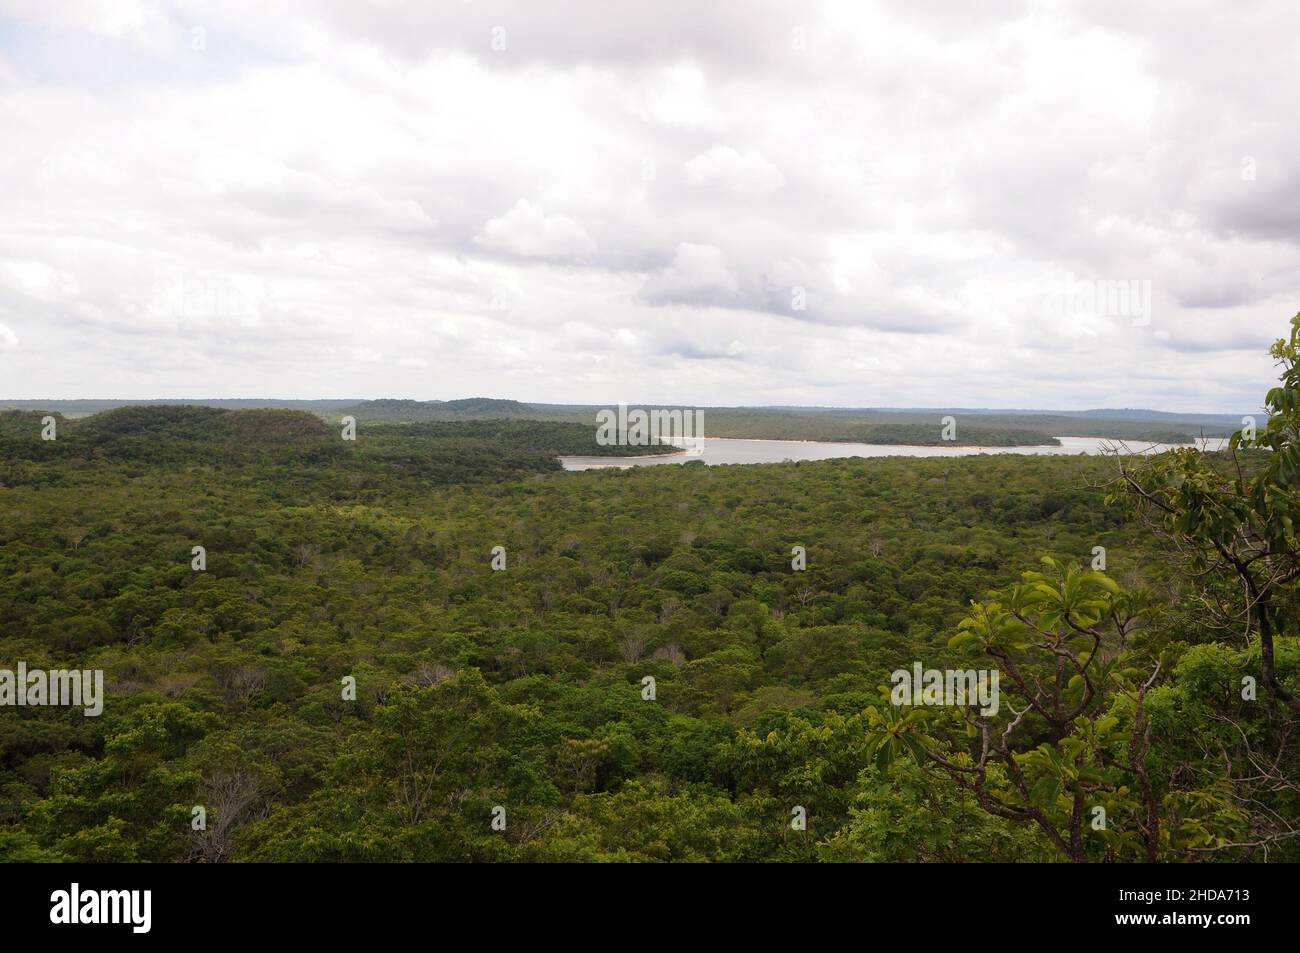 Vue sur la végétation amazonienne de la savane dans la ville d'Alter do Chão, dans l'État de Pará, au Brésil. Banque D'Images